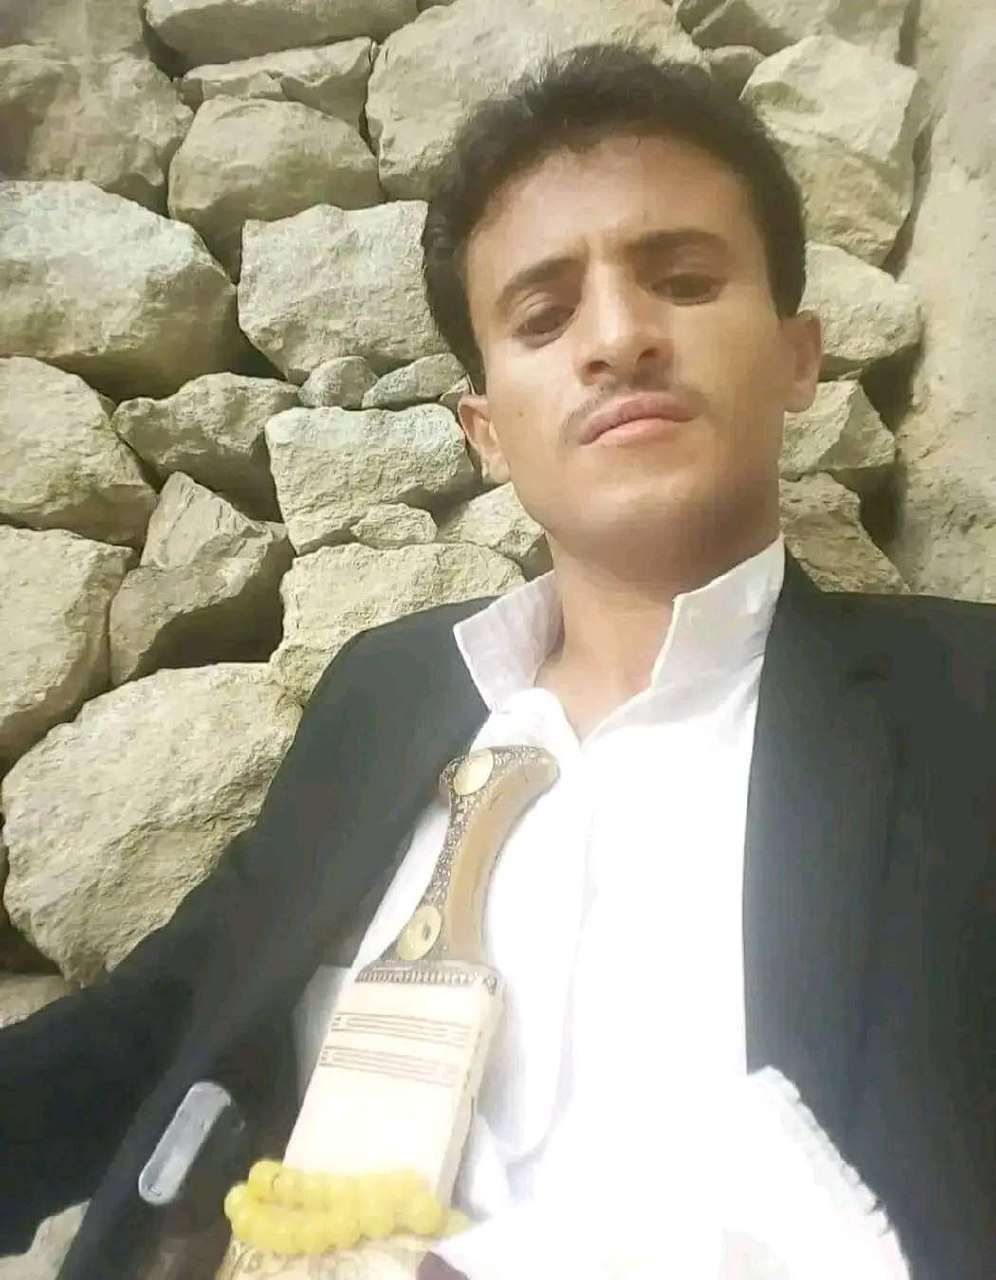 اخبار اليمن الان | تفاصيل جديدة وصادمة لاقدام نازح على قتل زوجته الصغيرة  بالسن بطريقة وحشية